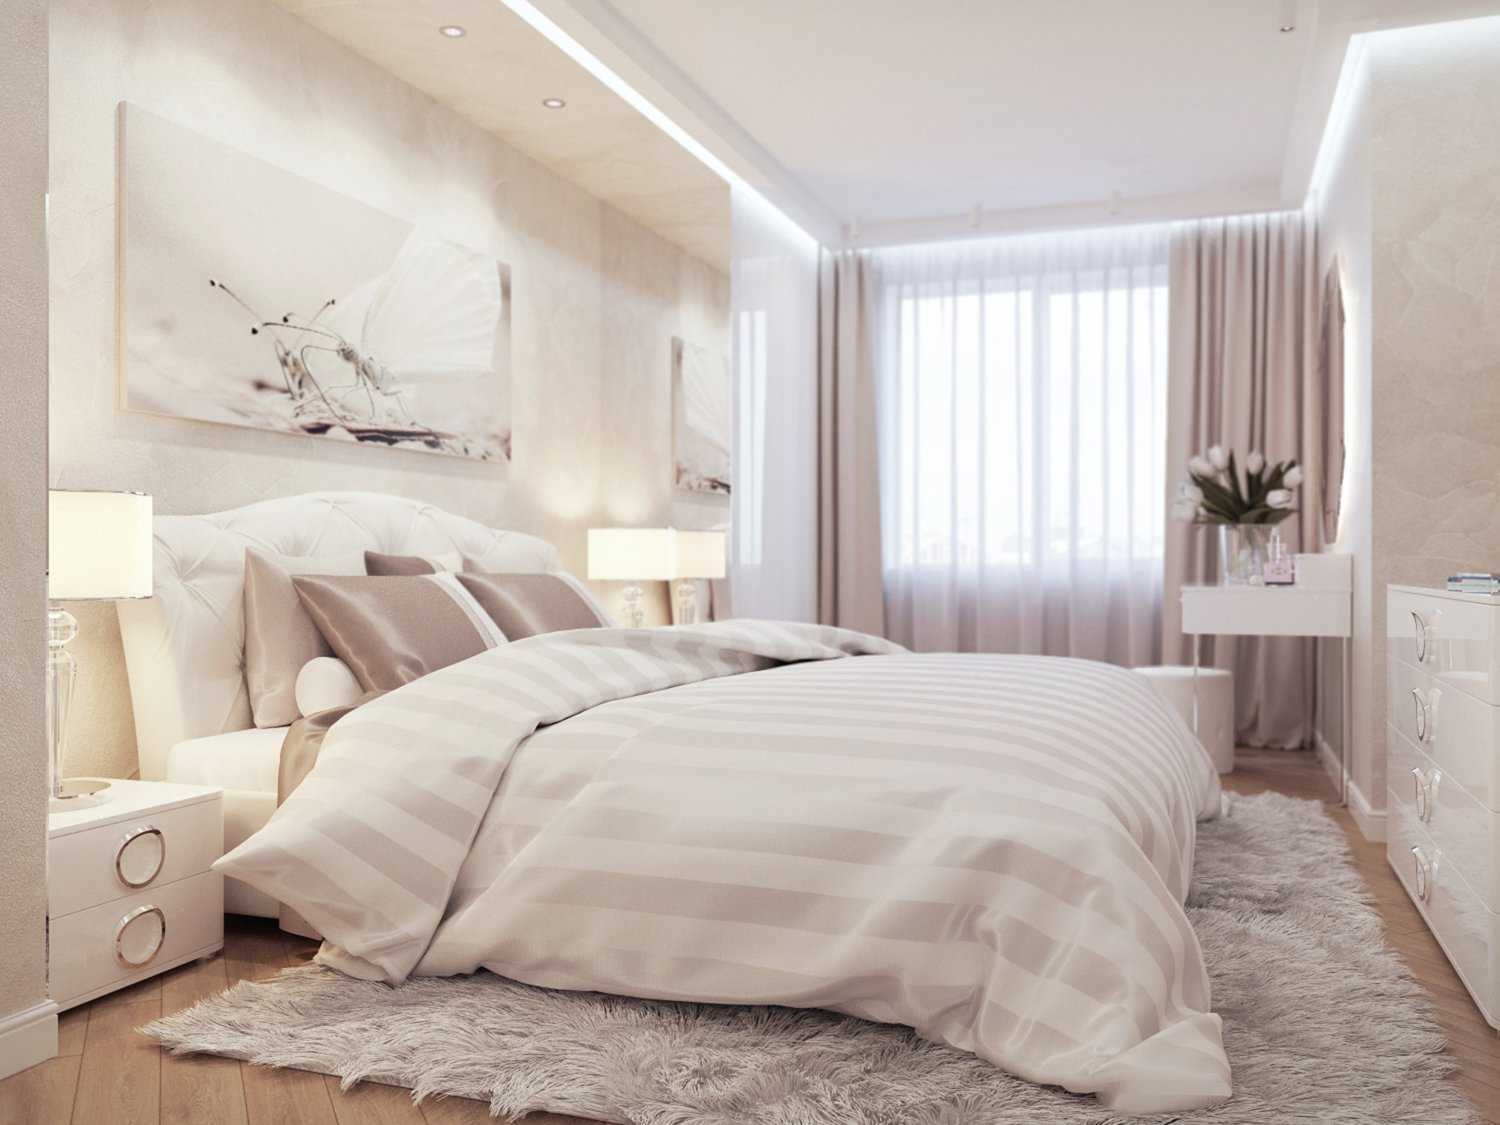 Дизайн спальни 2019 года - 95 фото современных идей и тенденции в оформлении интерьера